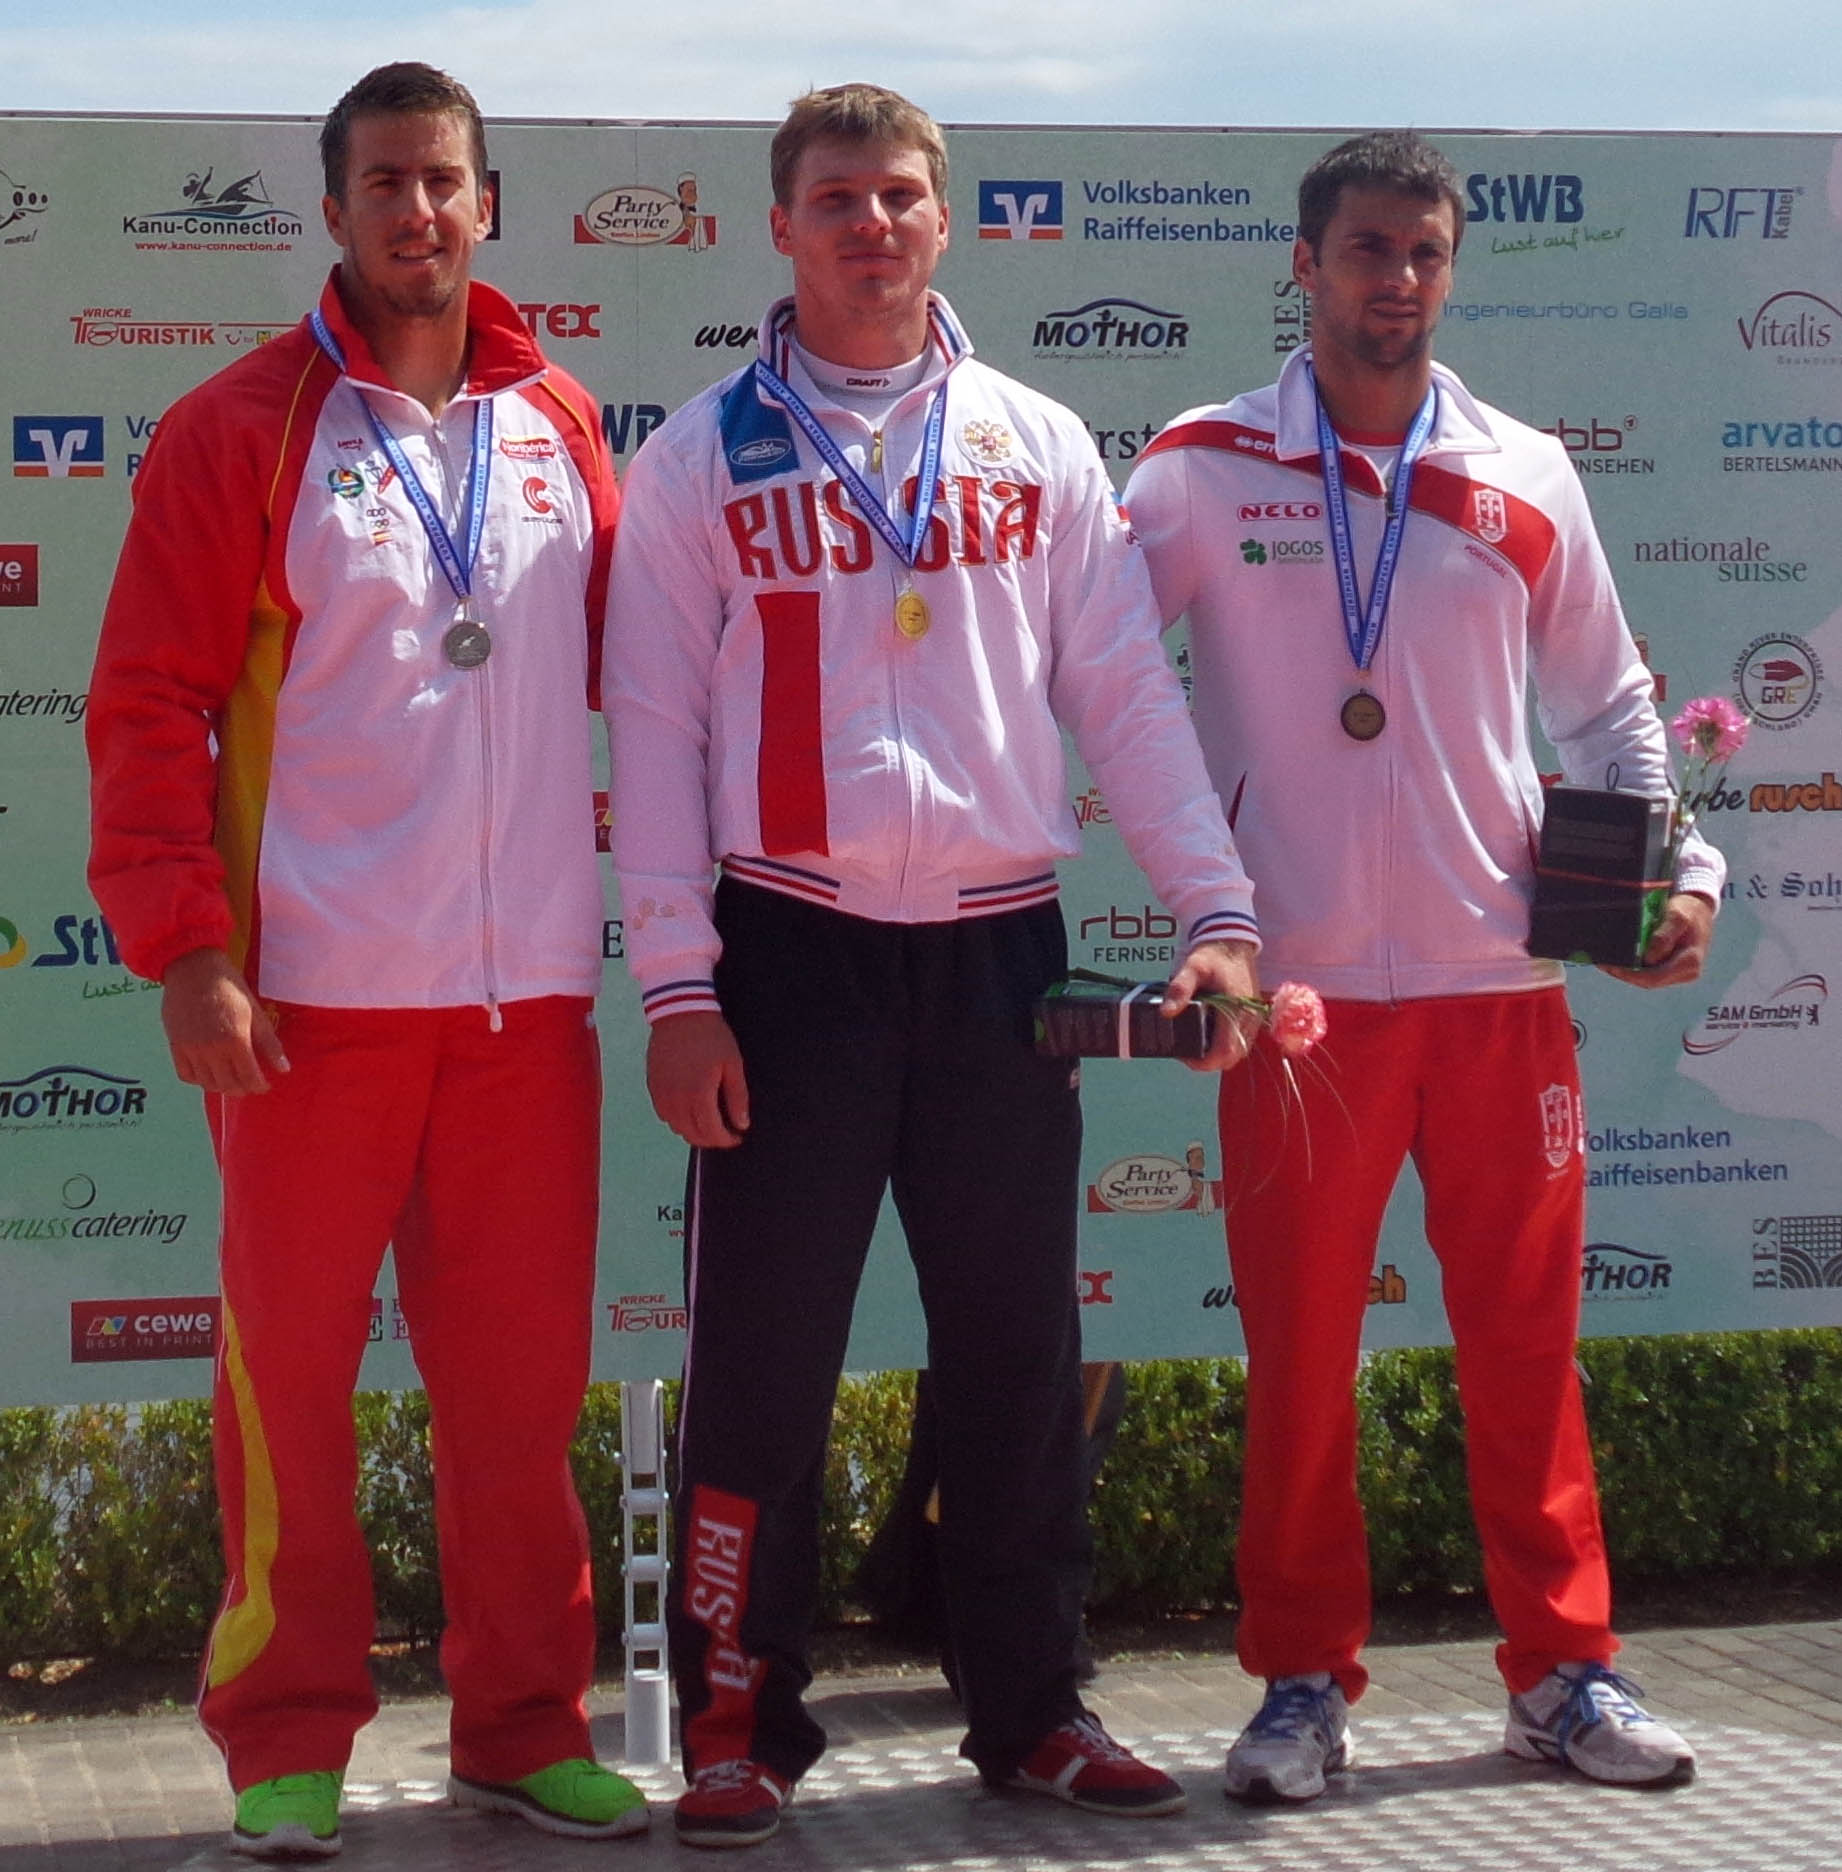 El podio ha sido completado por el ruso Alexey Korovashkov (oro) y por el portugués Helder Silva (bronce). Fuente: RFEP